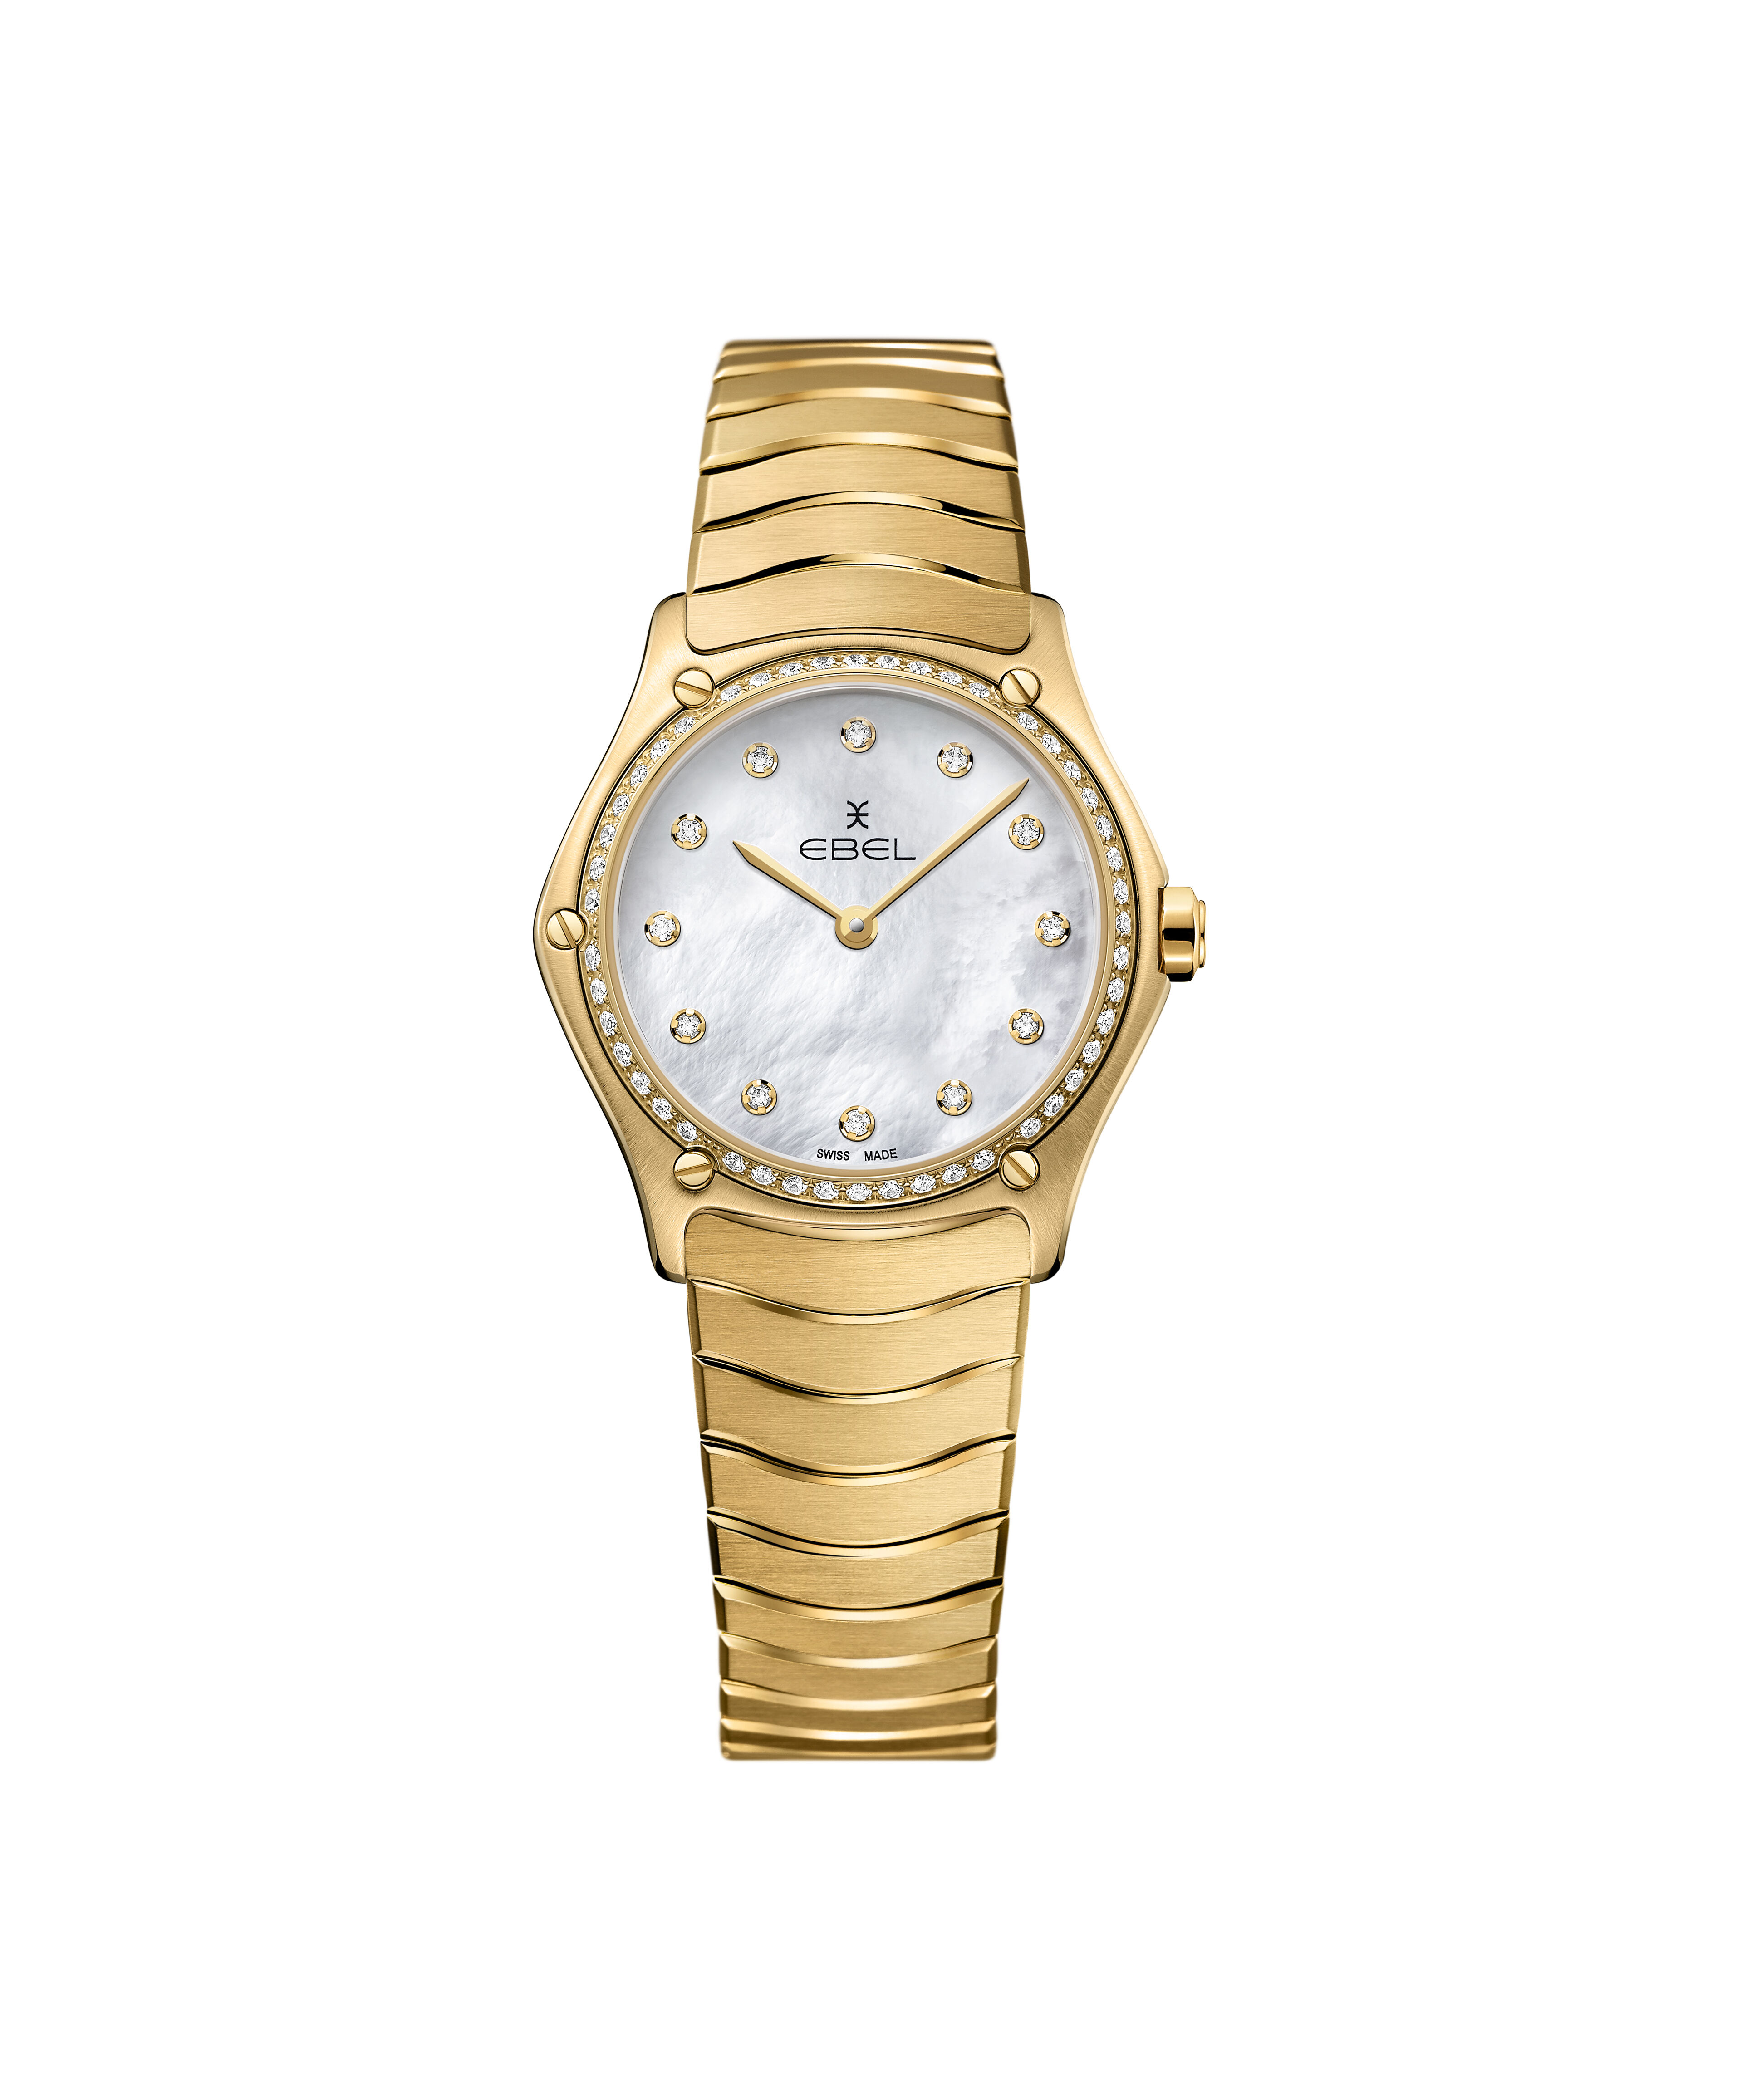 Dhgate Rolex Watch Replica